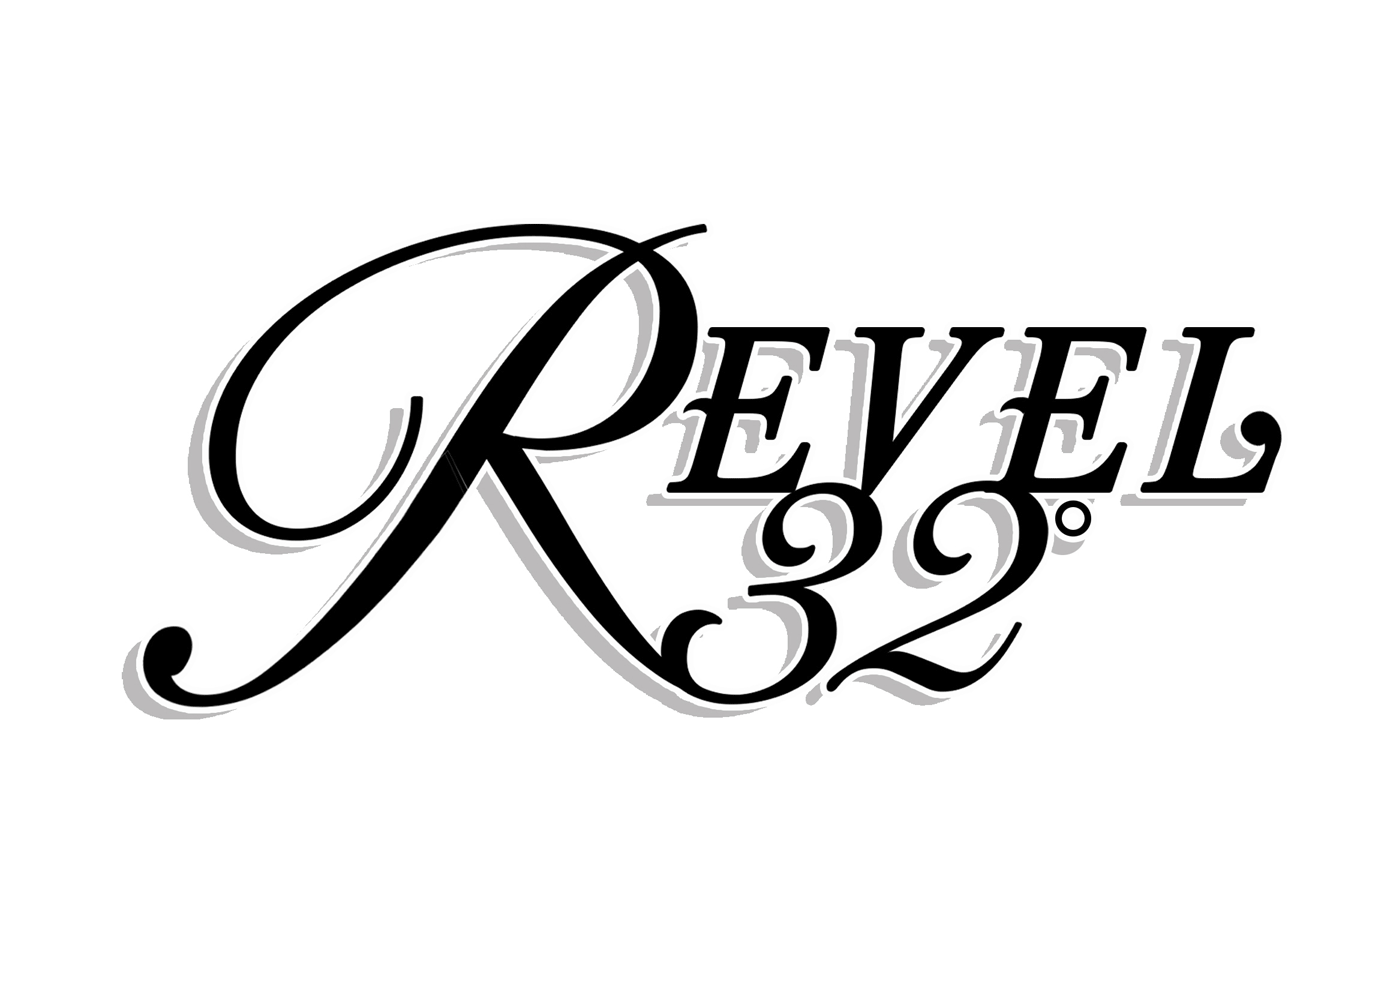 Revel 32 Logo